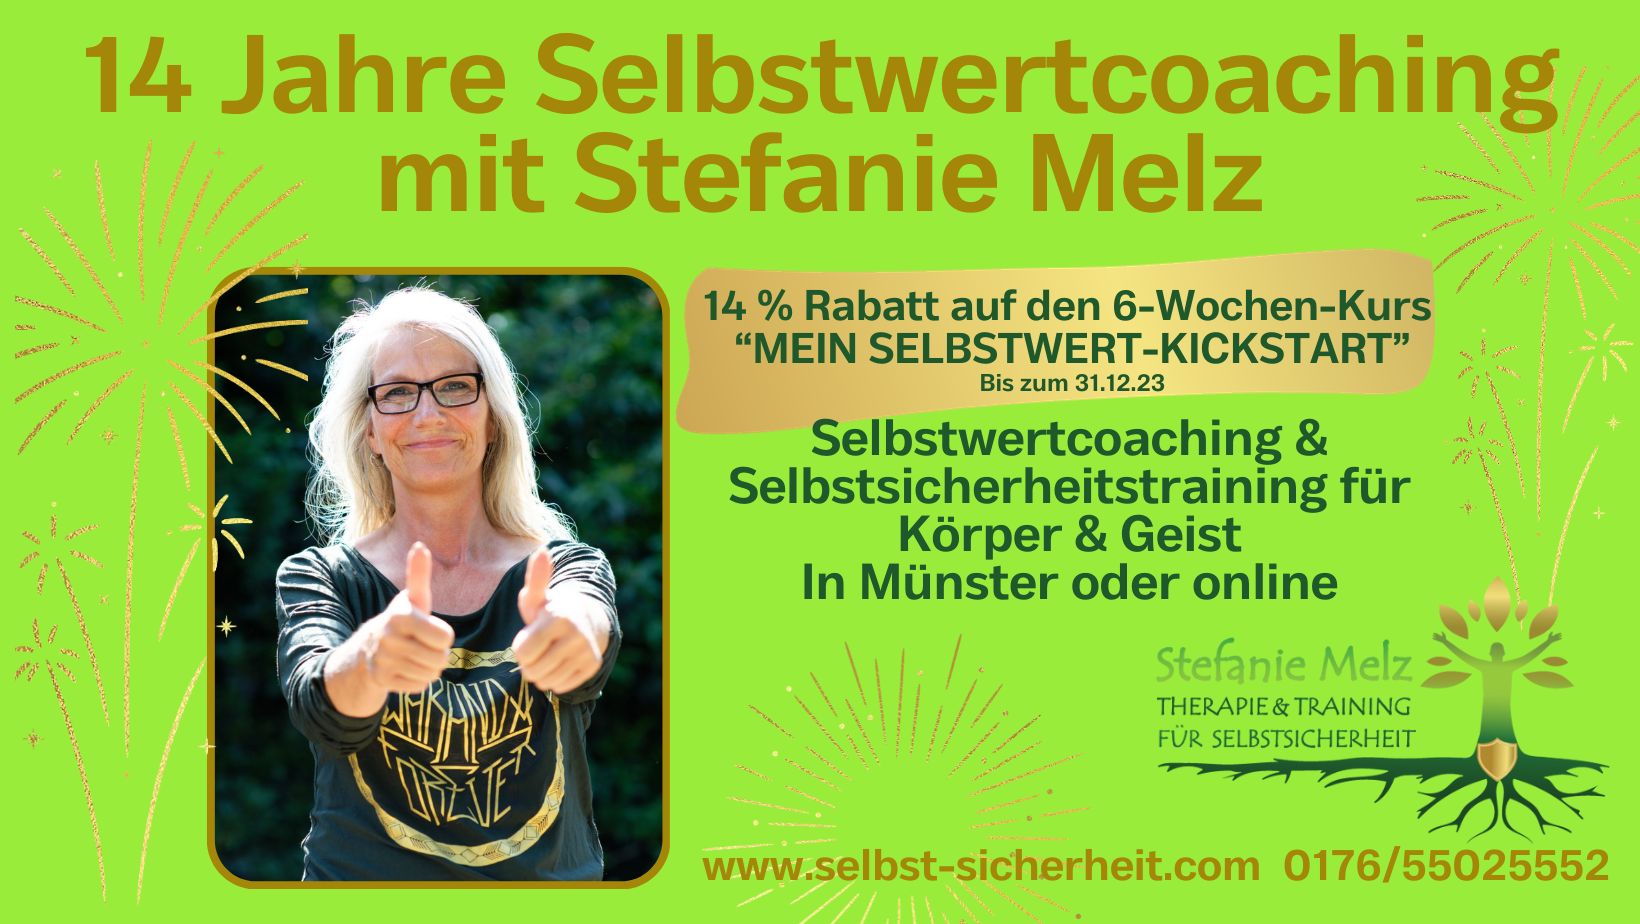 14 Jahre Selbstwertcoaching, Stefanie Melz, Therapie & Training für Selbstsicherheit, Selbstwertcoaching, Selbstsicherheitstraining, Münster, online